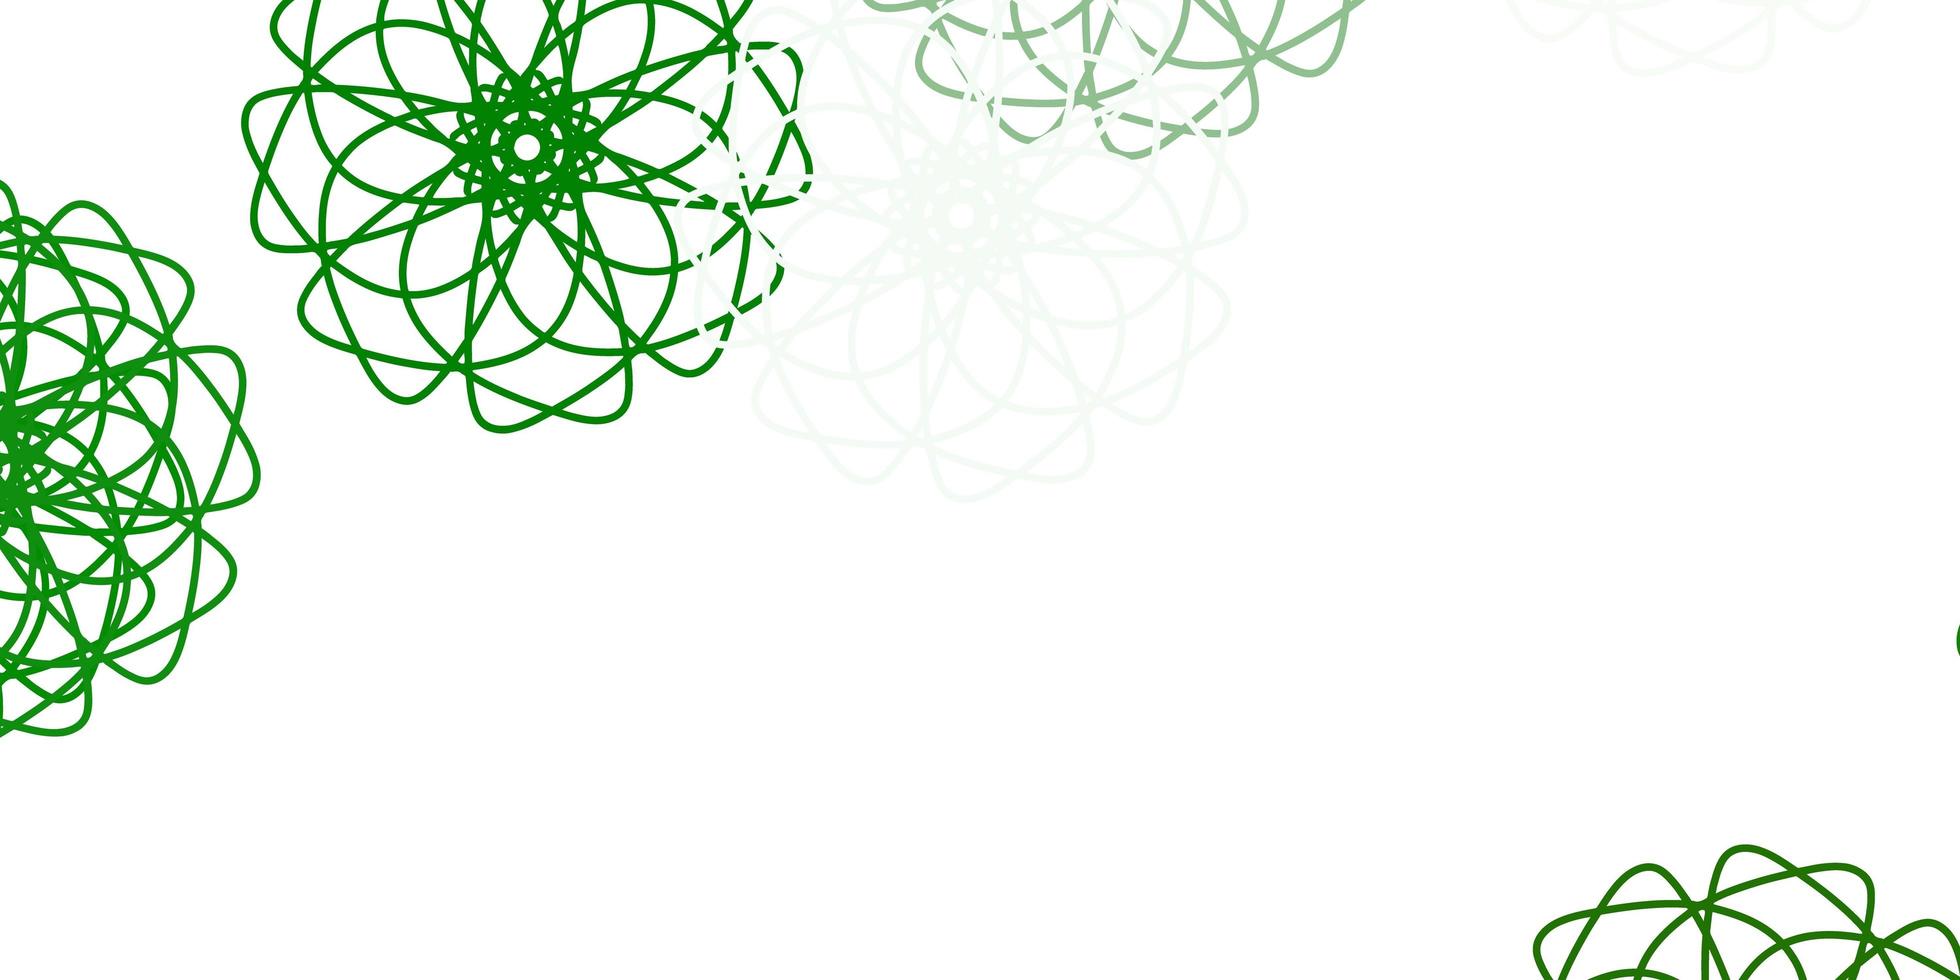 fundo do doodle do vetor verde claro com flores.